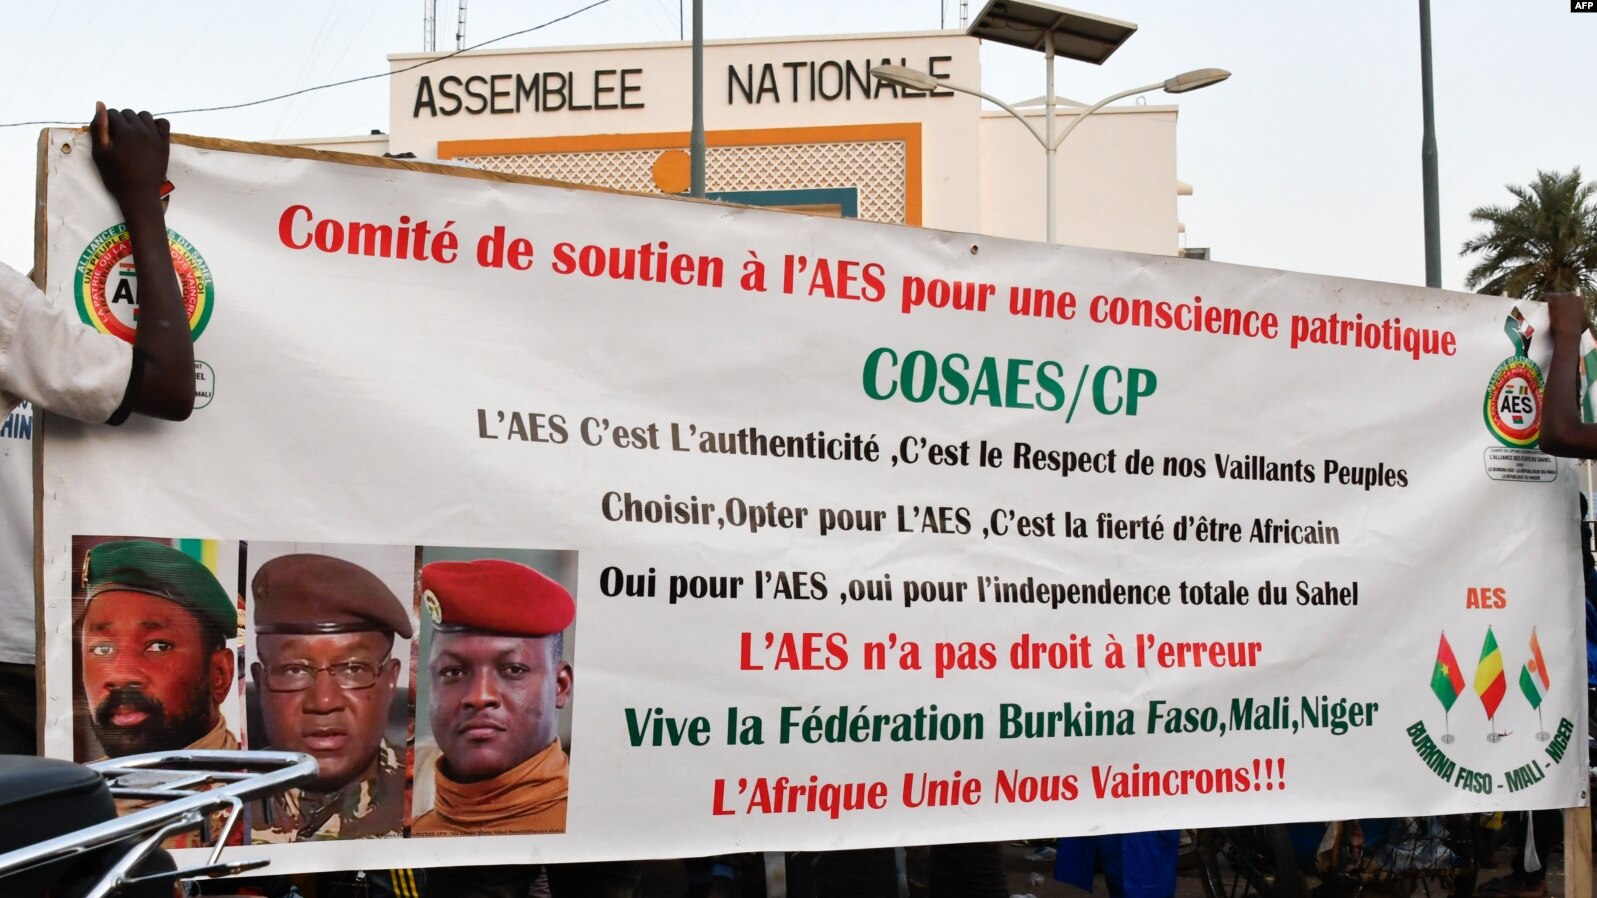 Burkina, Mali, Niger : réunion de ministres à Ouagadougou pour créer une confédération